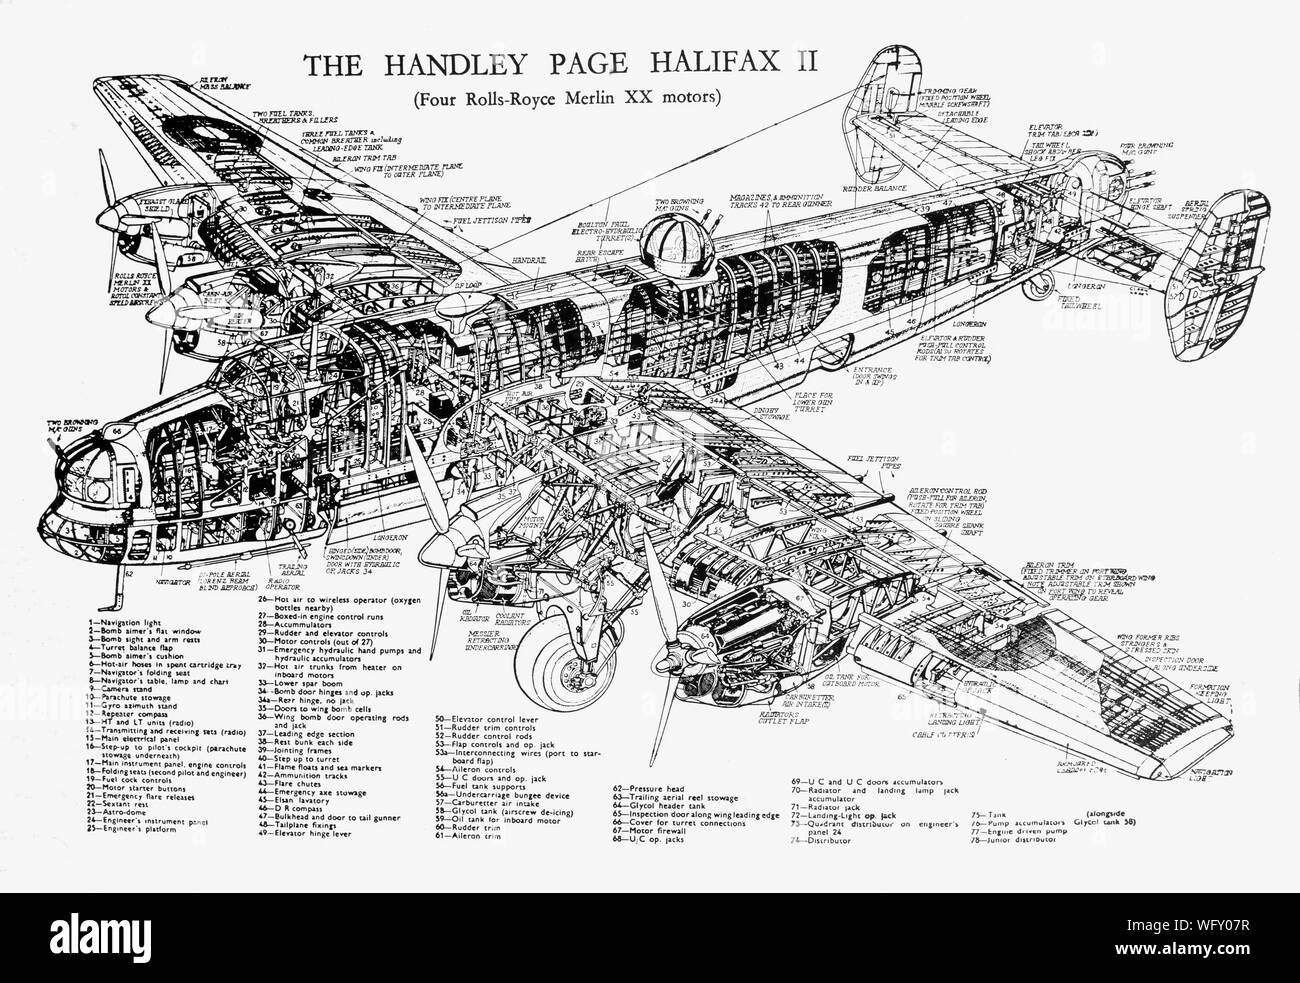 Una vista esplosa dell'Handley Page Halifax II, un Royal Air Force (RAF) quattro bimotore bombardiere pesante della Seconda Guerra Mondiale. Originariamente concepito come un bimotore bombardiere, la progettazione è stata alterata presso il Ministero per un quattro-disposizione del motore alimentato dalla Rolls Royce Merlin motore. Foto Stock